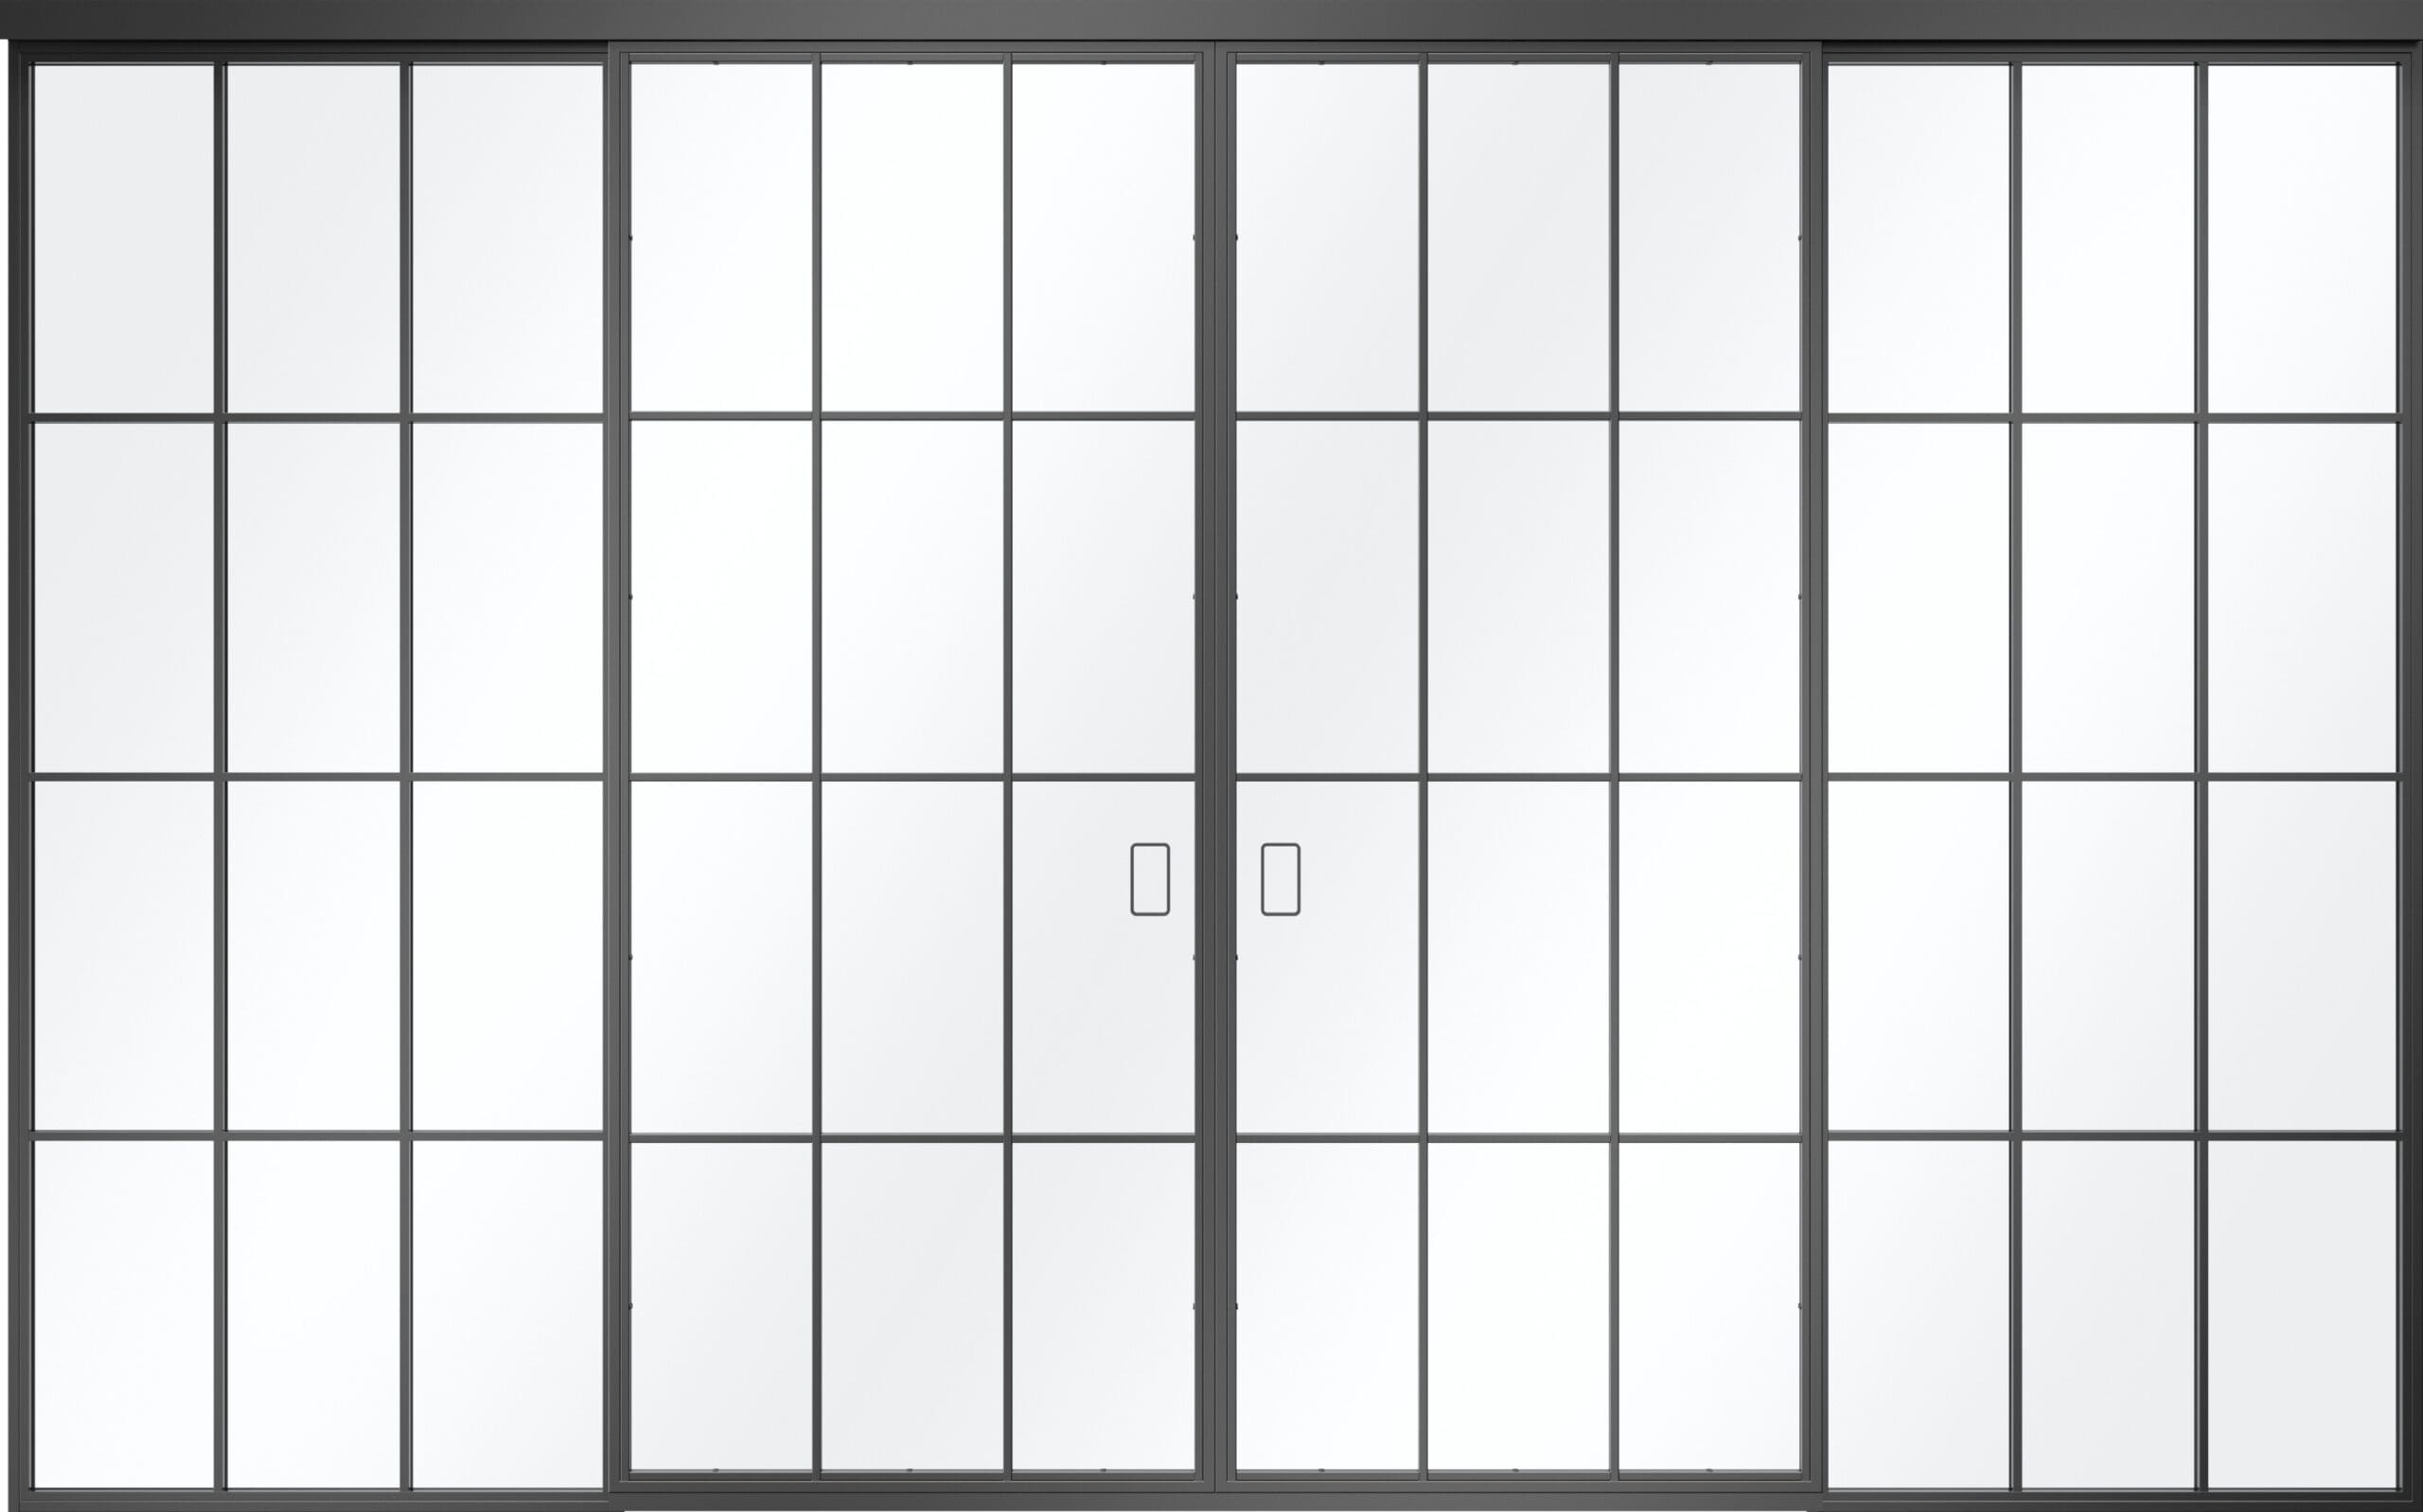 Zeichnung der zweiflügligen Türe im Loftdesign